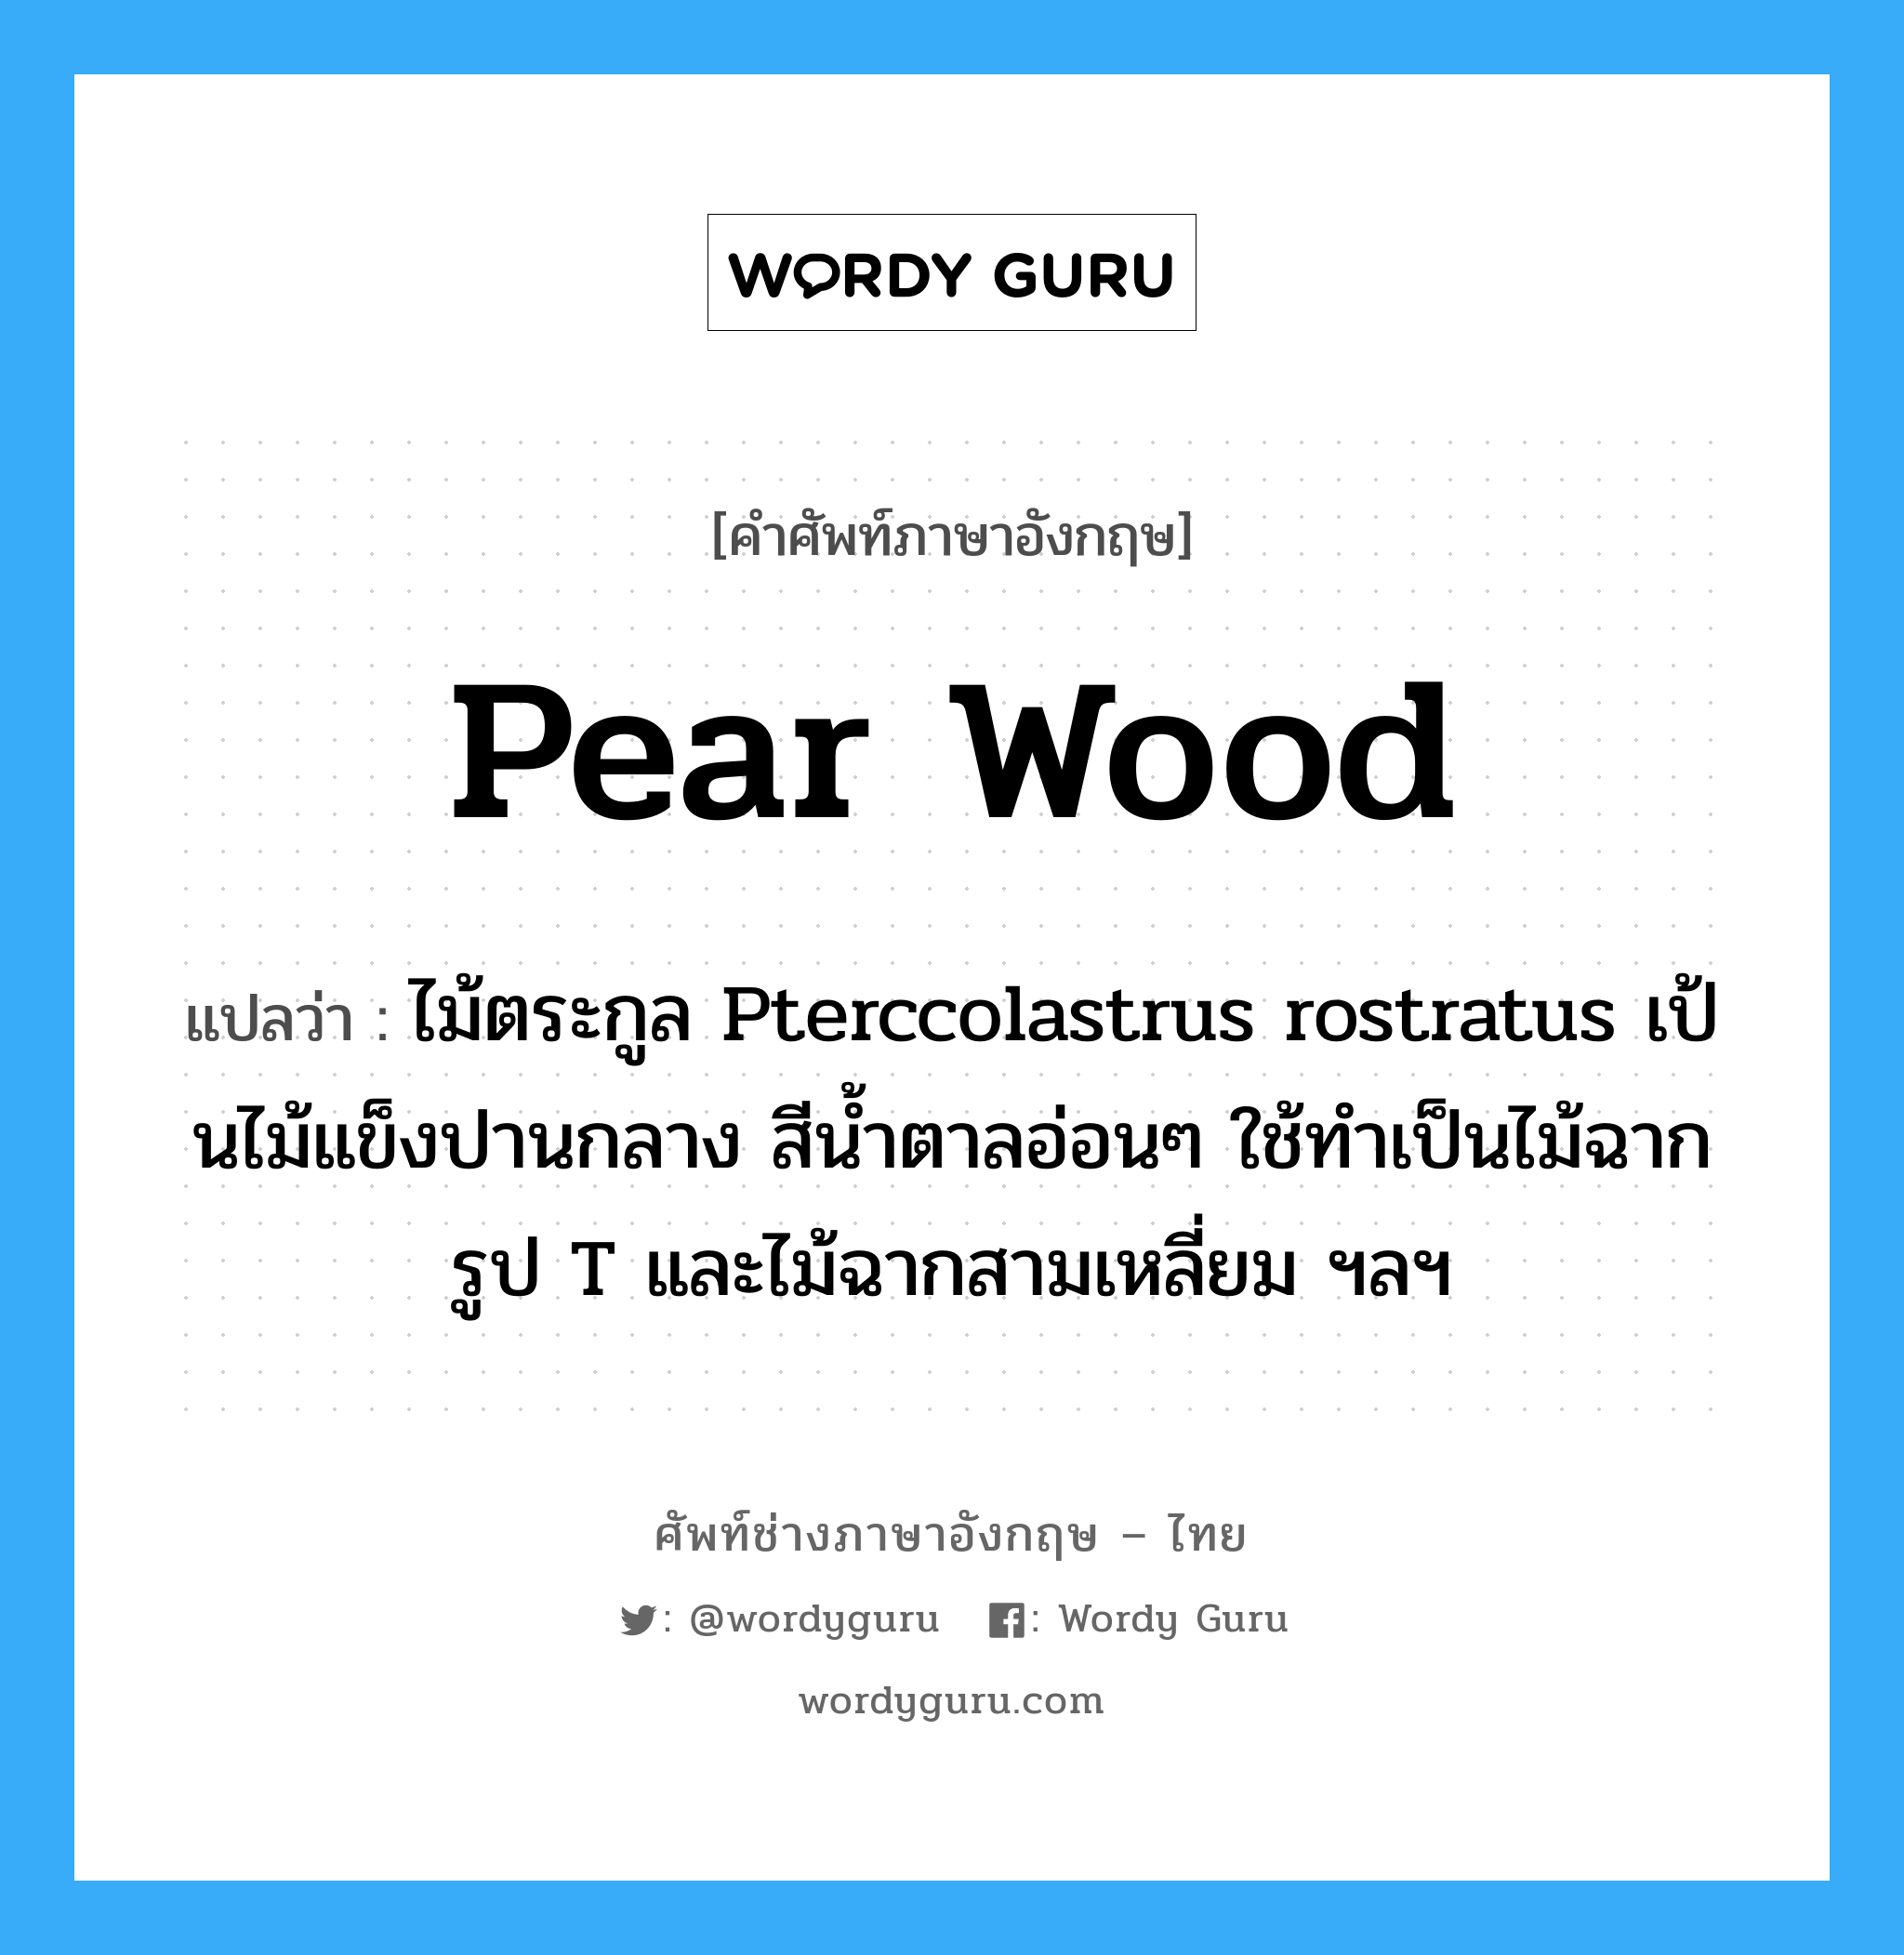 pear wood แปลว่า?, คำศัพท์ช่างภาษาอังกฤษ - ไทย pear wood คำศัพท์ภาษาอังกฤษ pear wood แปลว่า ไม้ตระกูล Pterccolastrus rostratus เป้นไม้แข็งปานกลาง สีน้ำตาลอ่อนๆ ใช้ทำเป็นไม้ฉากรูป T และไม้ฉากสามเหลี่ยม ฯลฯ